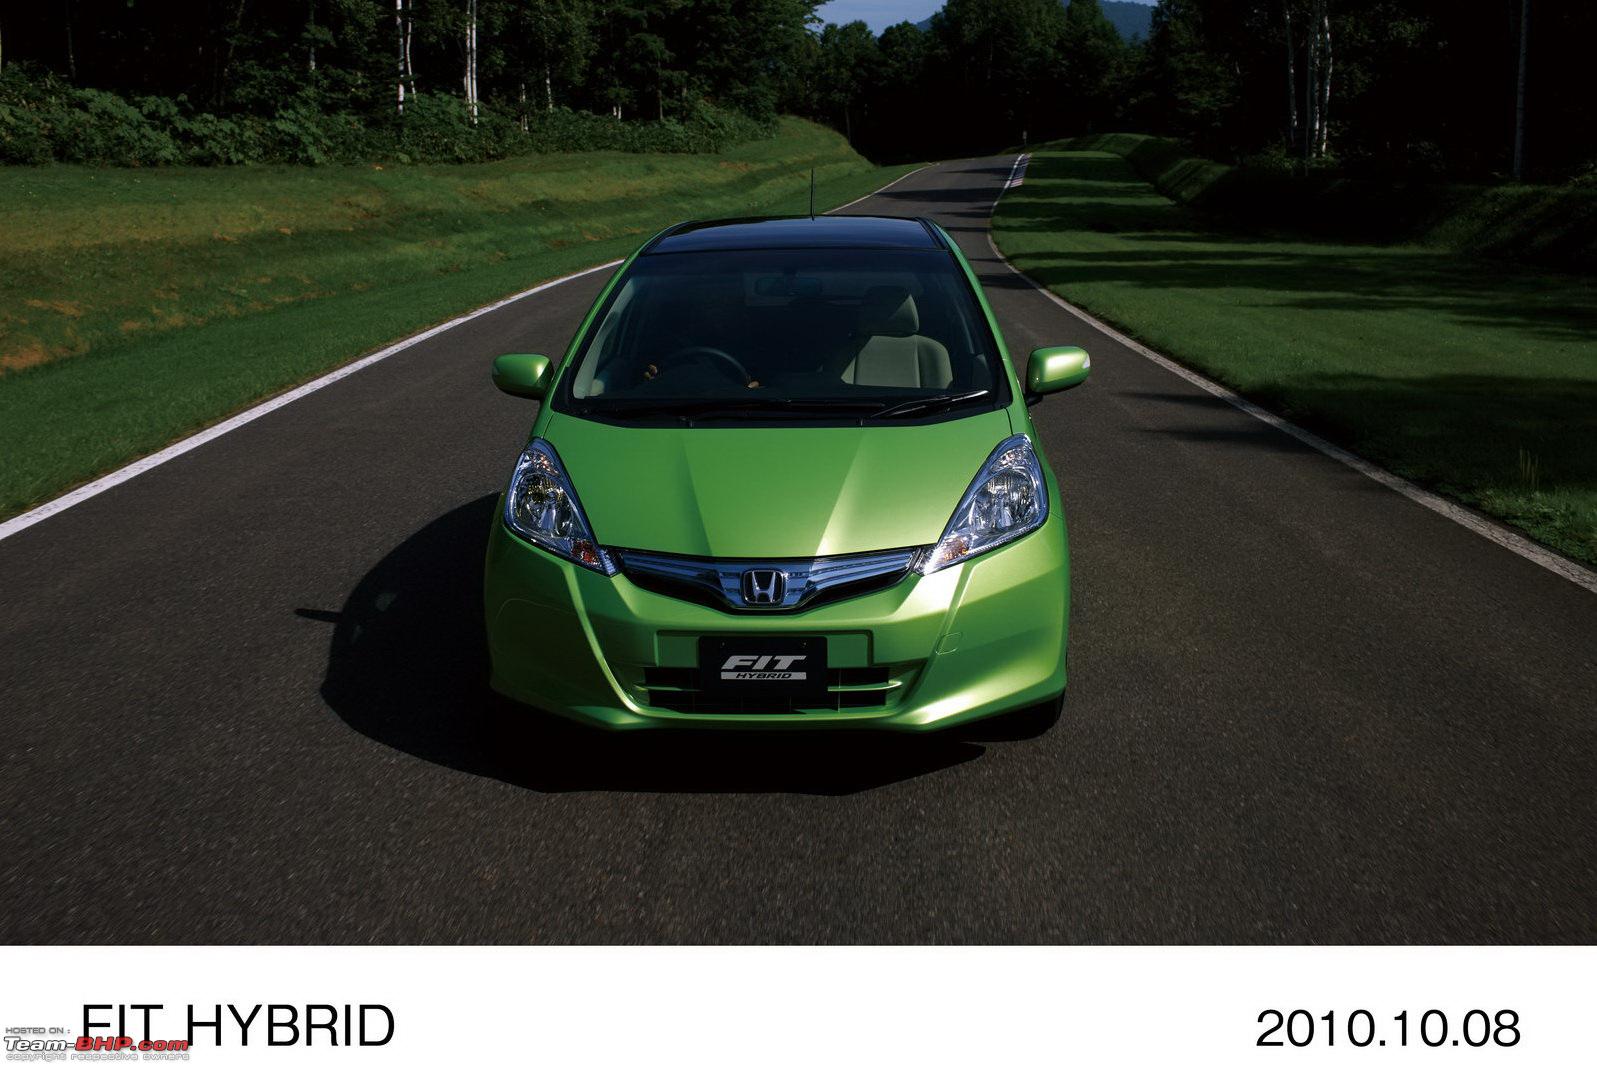 Фит гибрид 2011. Honda Fit Hybrid 2011. Honda Fit Jazz Hybrid. Хонда фит гибрид 2010. Хонда фит gp1 гибрид.